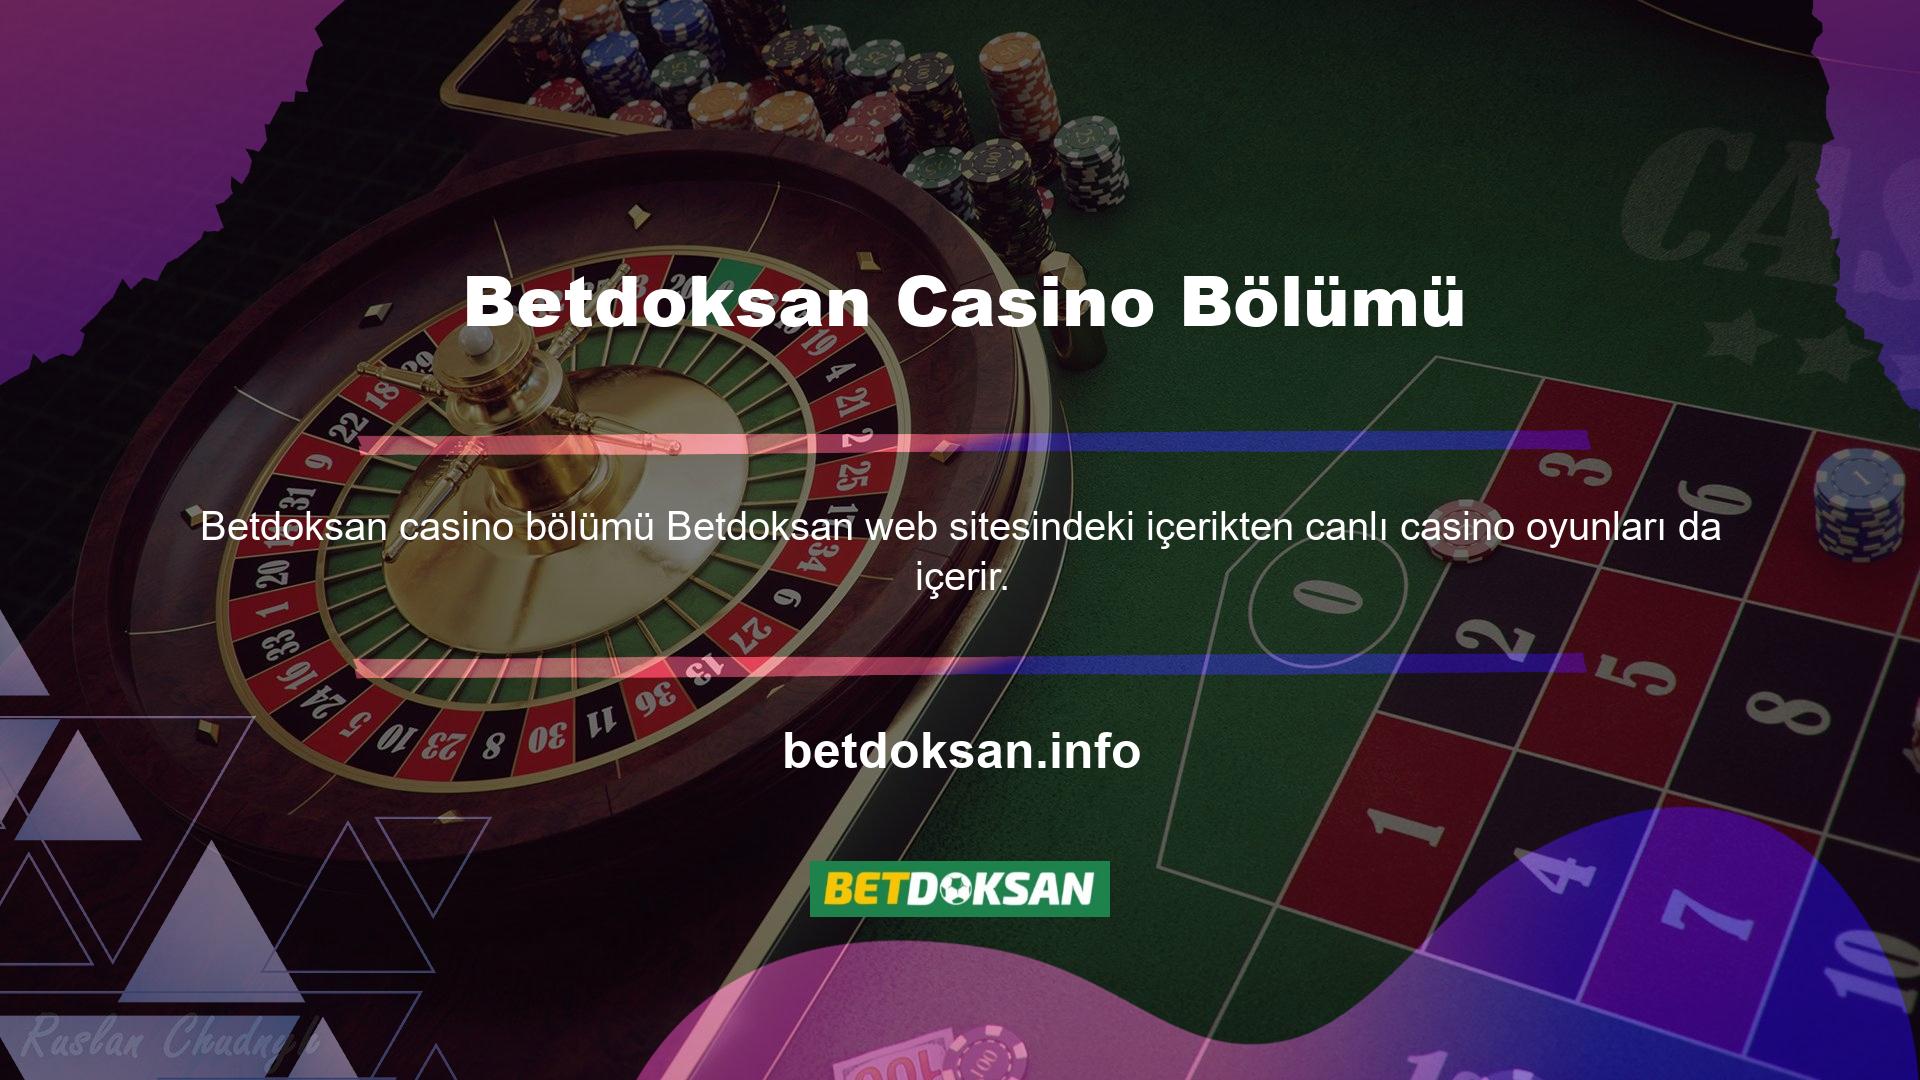 Canlı casino oyunlarına üst menüden 'Canlı Casino' seçeneğine tıklayarak ulaşabilirsiniz